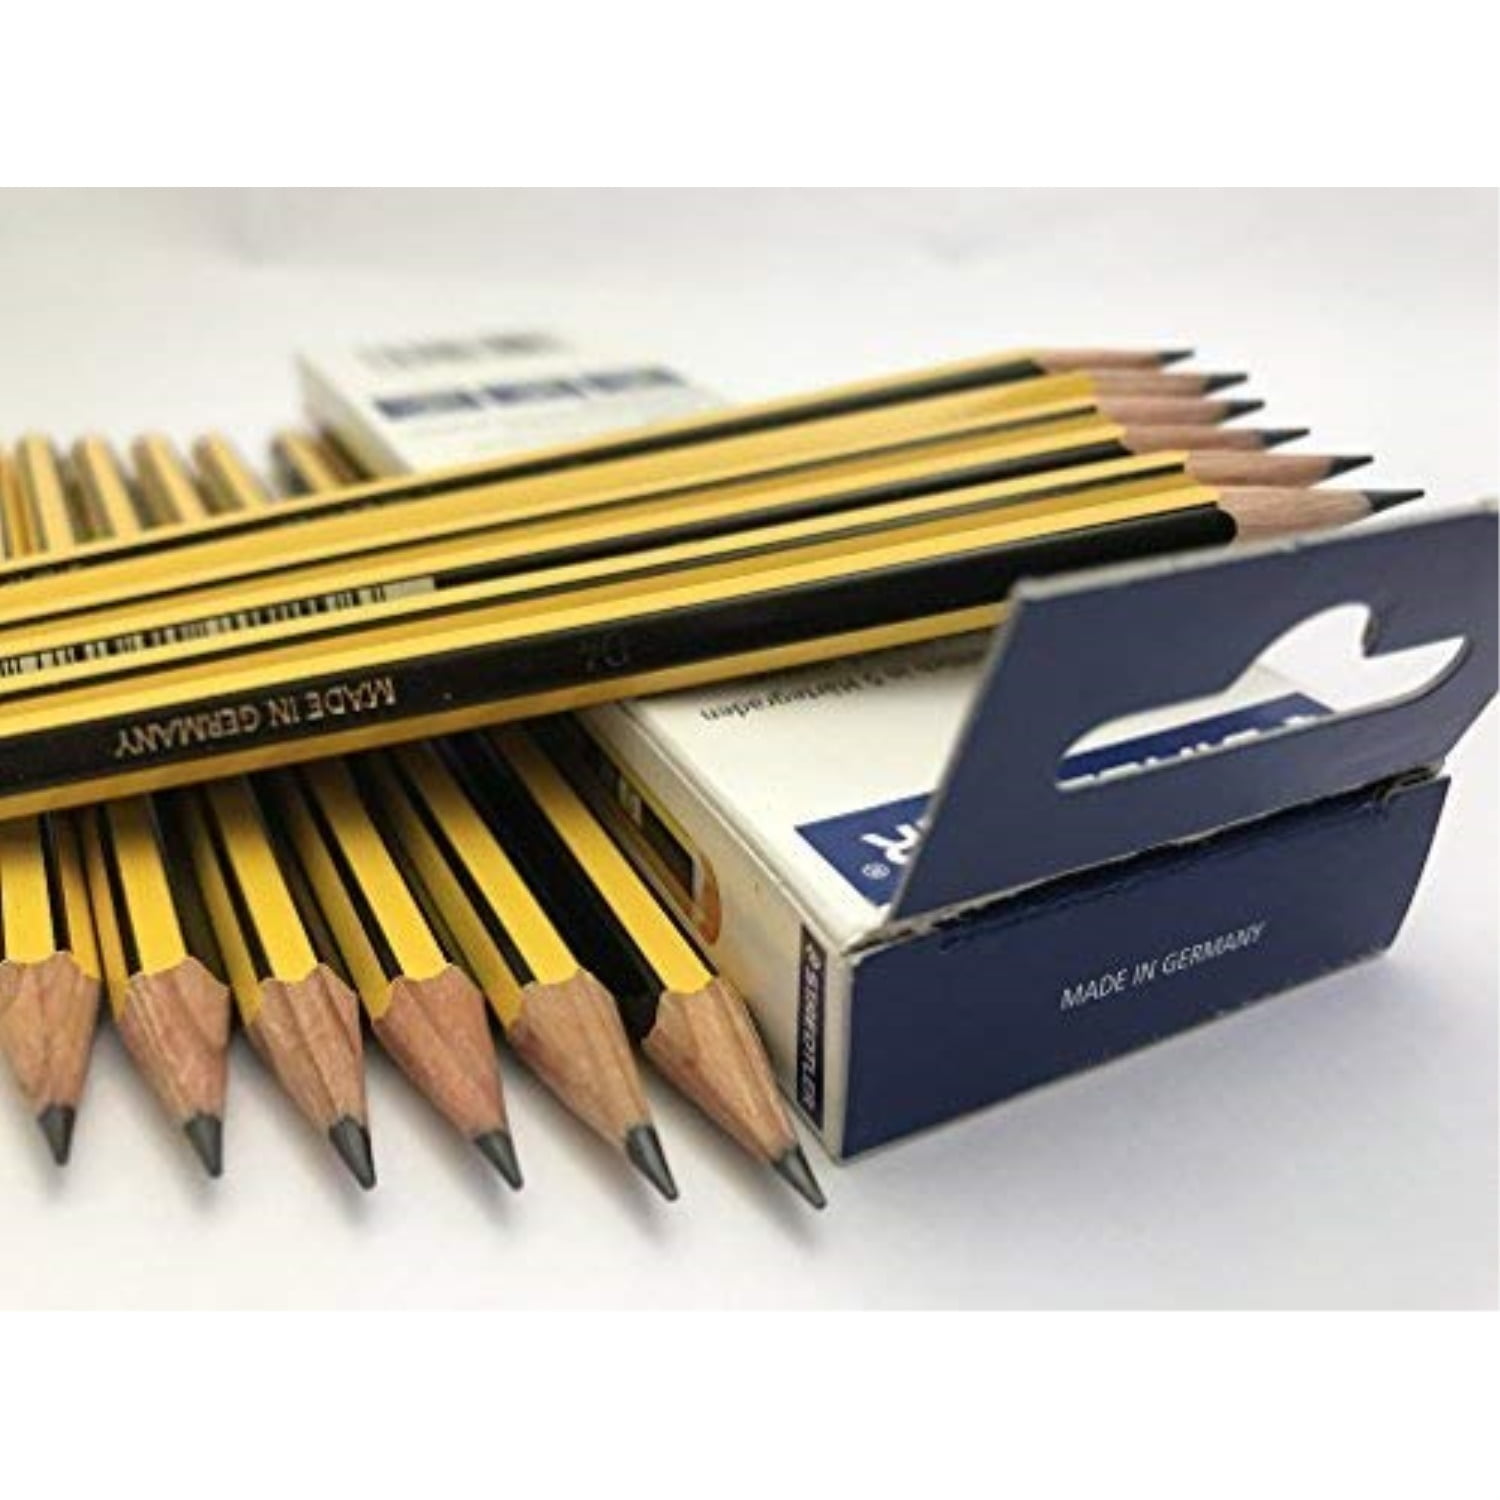 Noris 120-36 x HB Premium Graphite School Pencils and Pencil Case Staedtler 